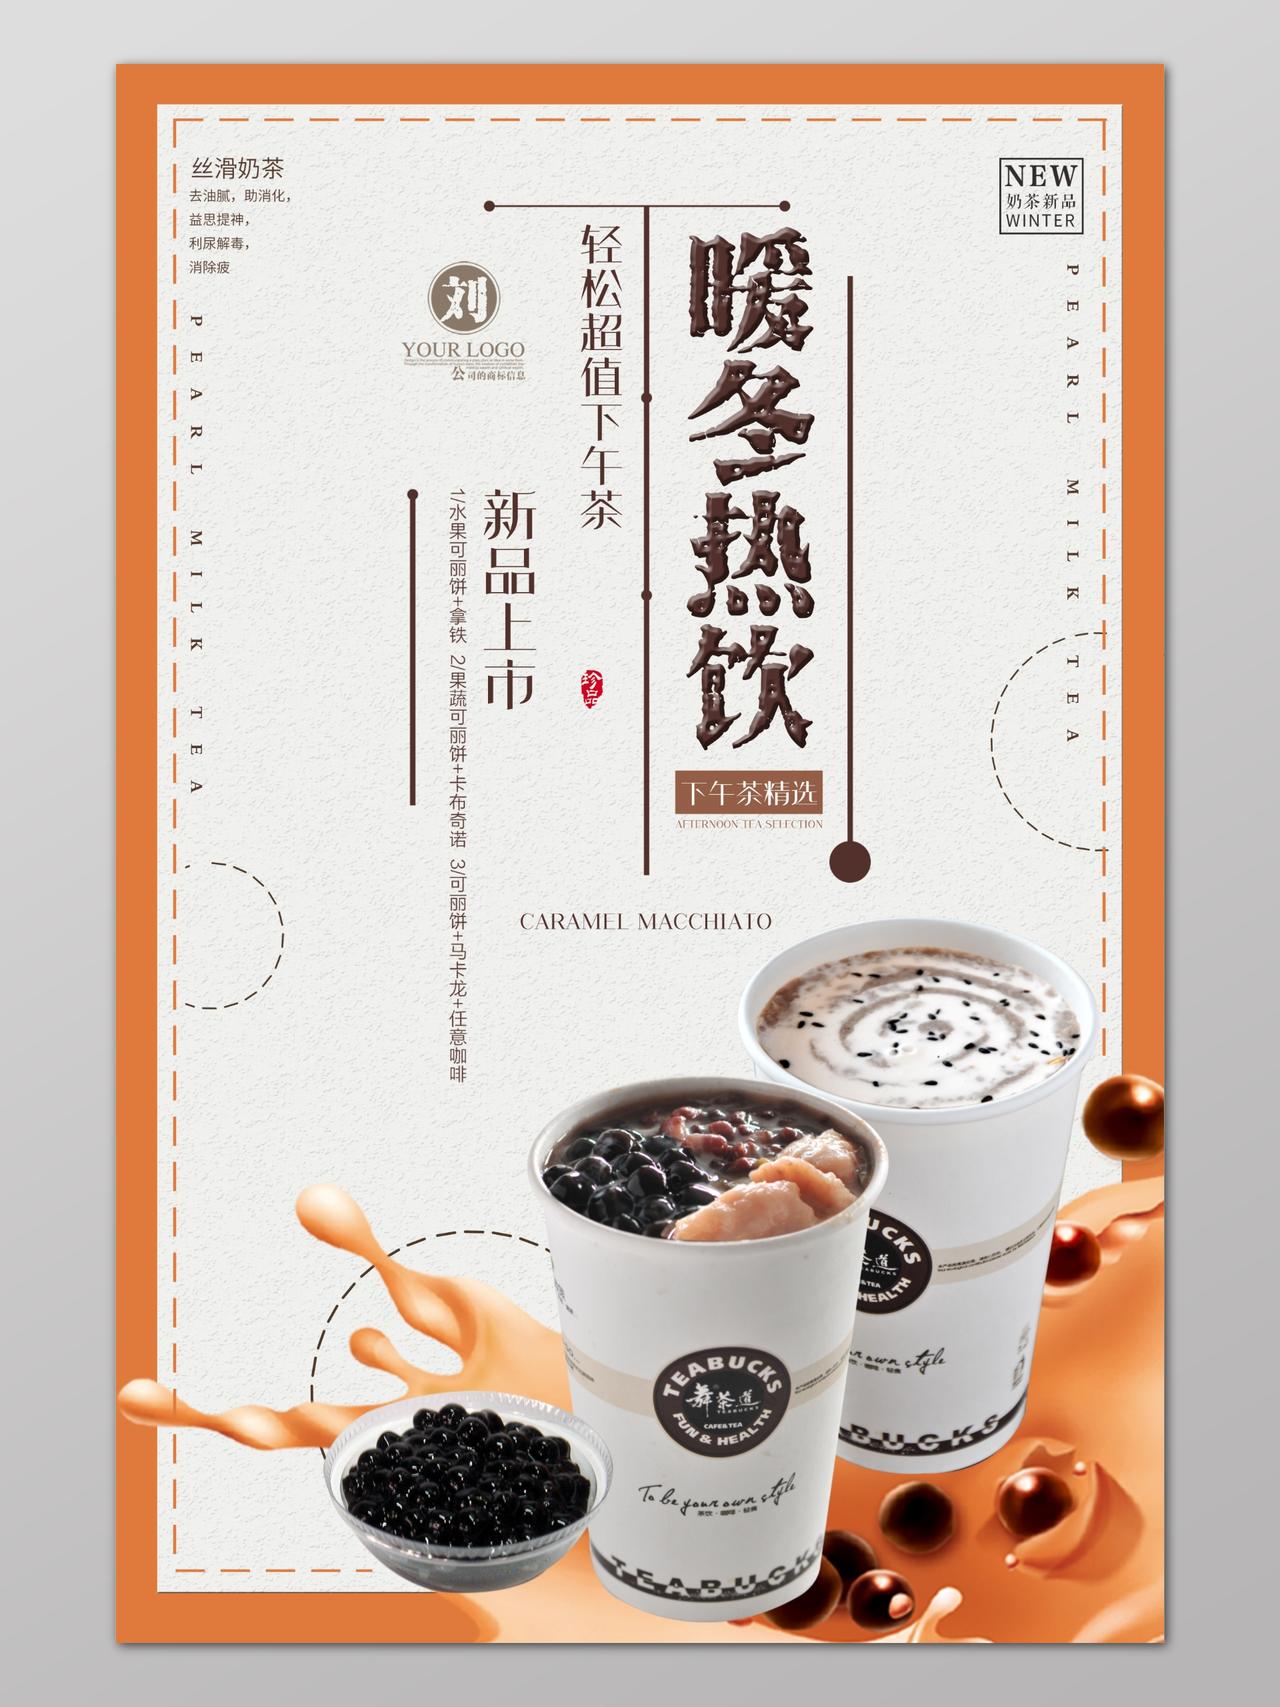 暖冬热饮咖啡茶点饮品设计海报